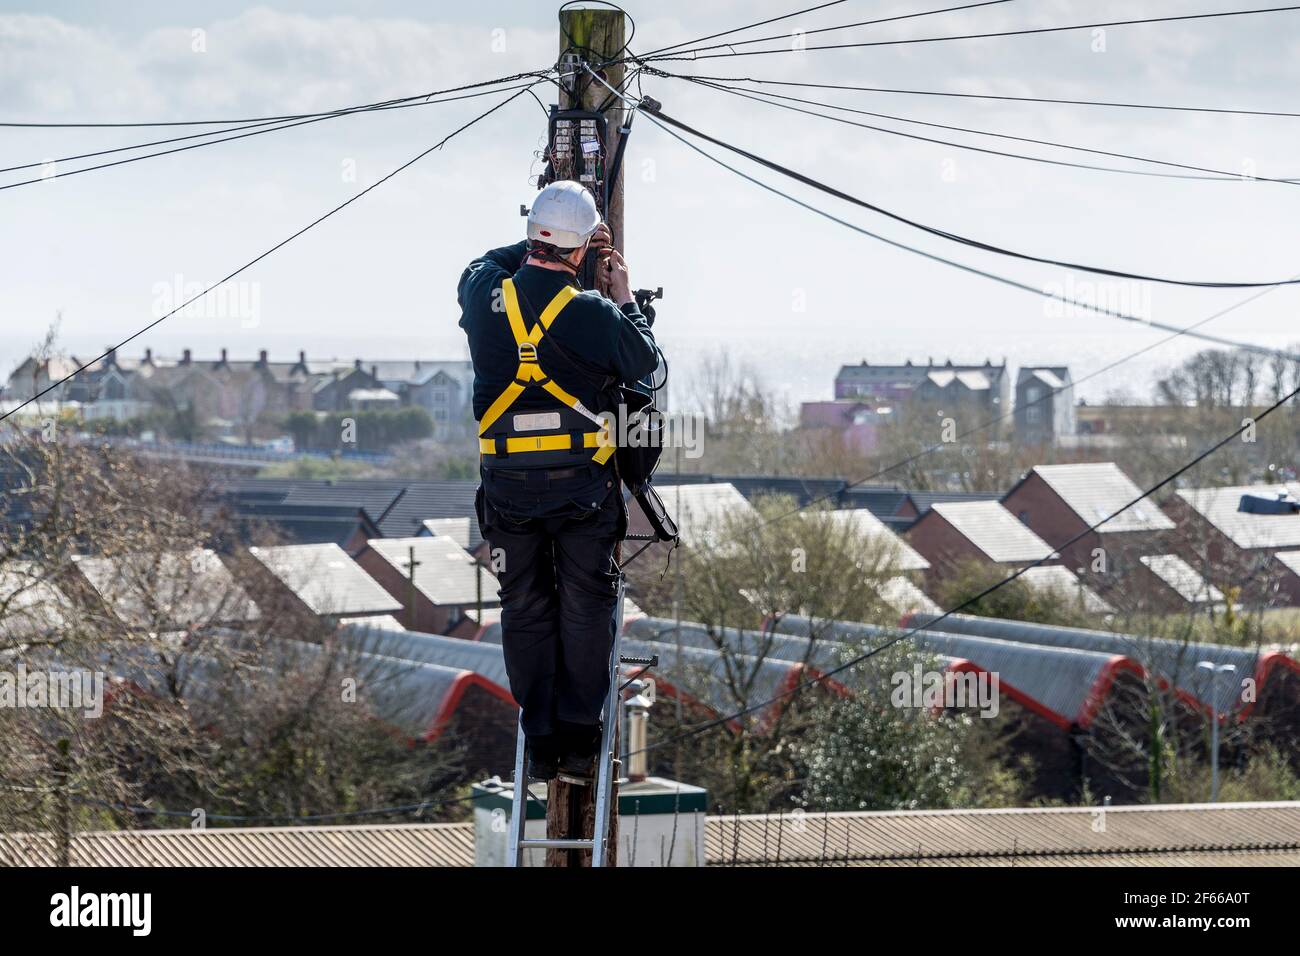 Un tecnico telefonico in piedi su una scala che lavora sulla cima di un palo di telegrafo. È una giornata di sole e al di là di lui i tetti si ritrovano in lontananza. Foto Stock